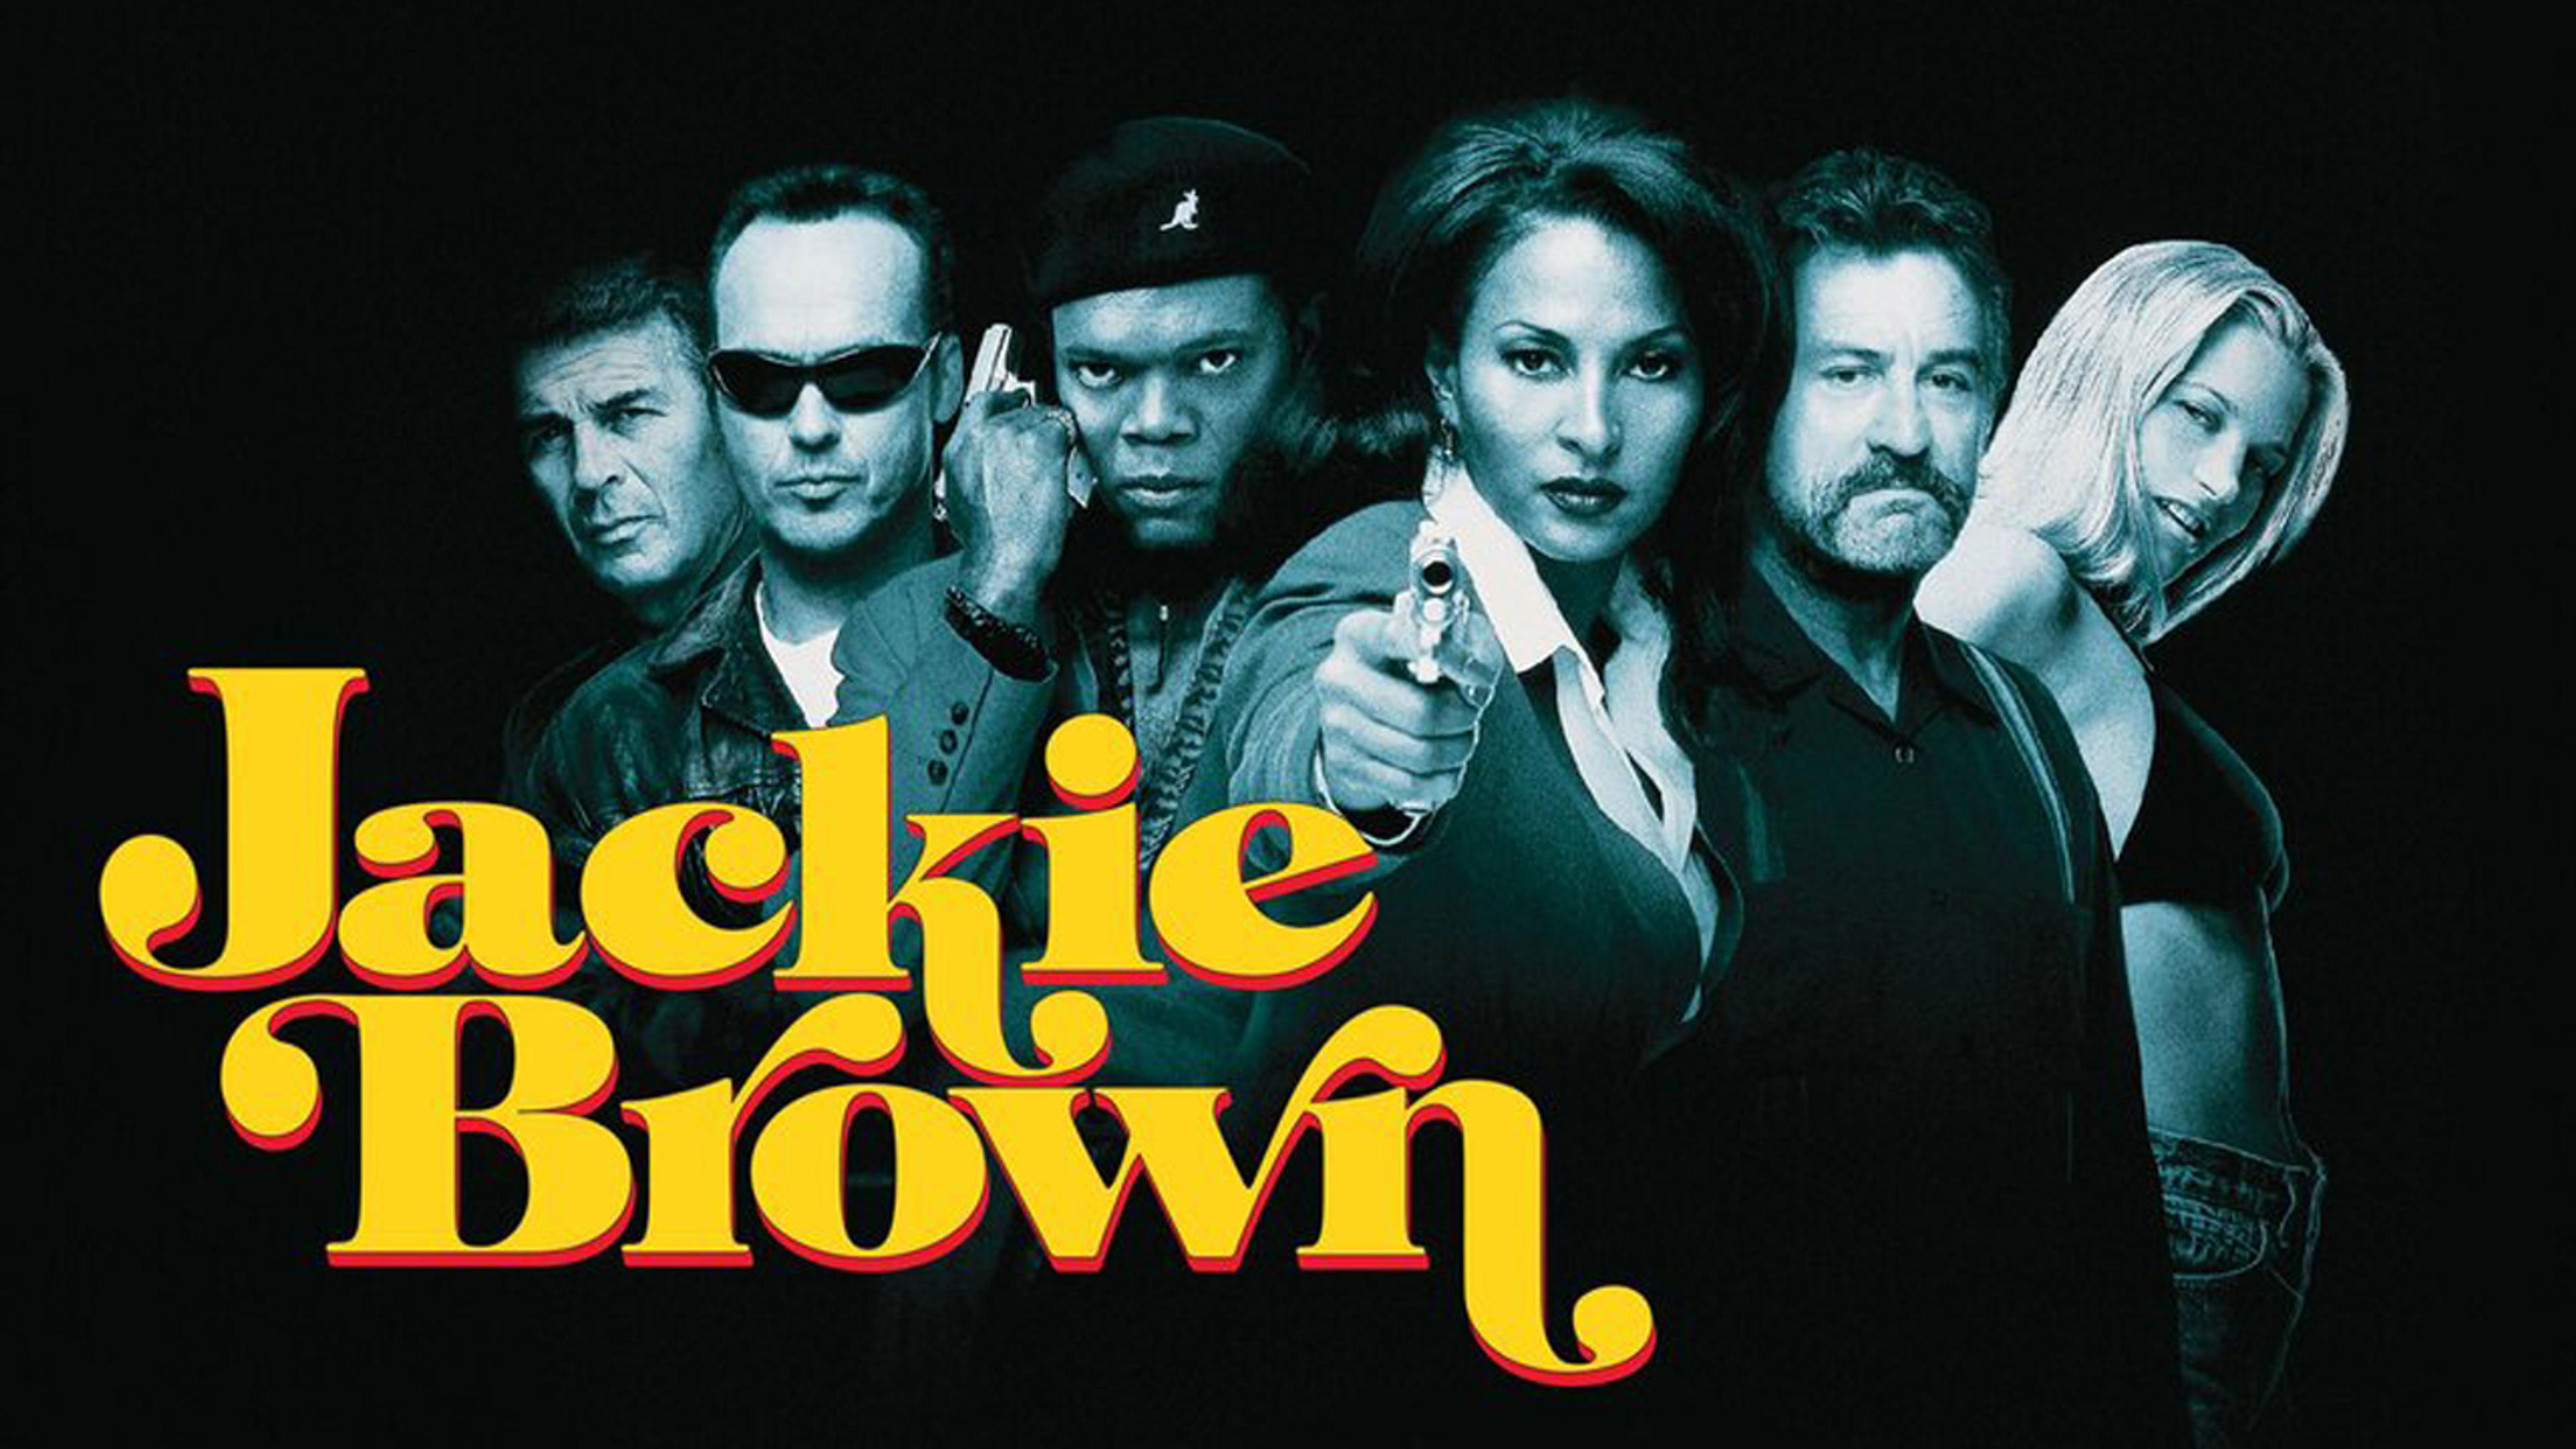 Seks barske personer i gråtoner står bak en gul tittel som sier Jackie Brown.